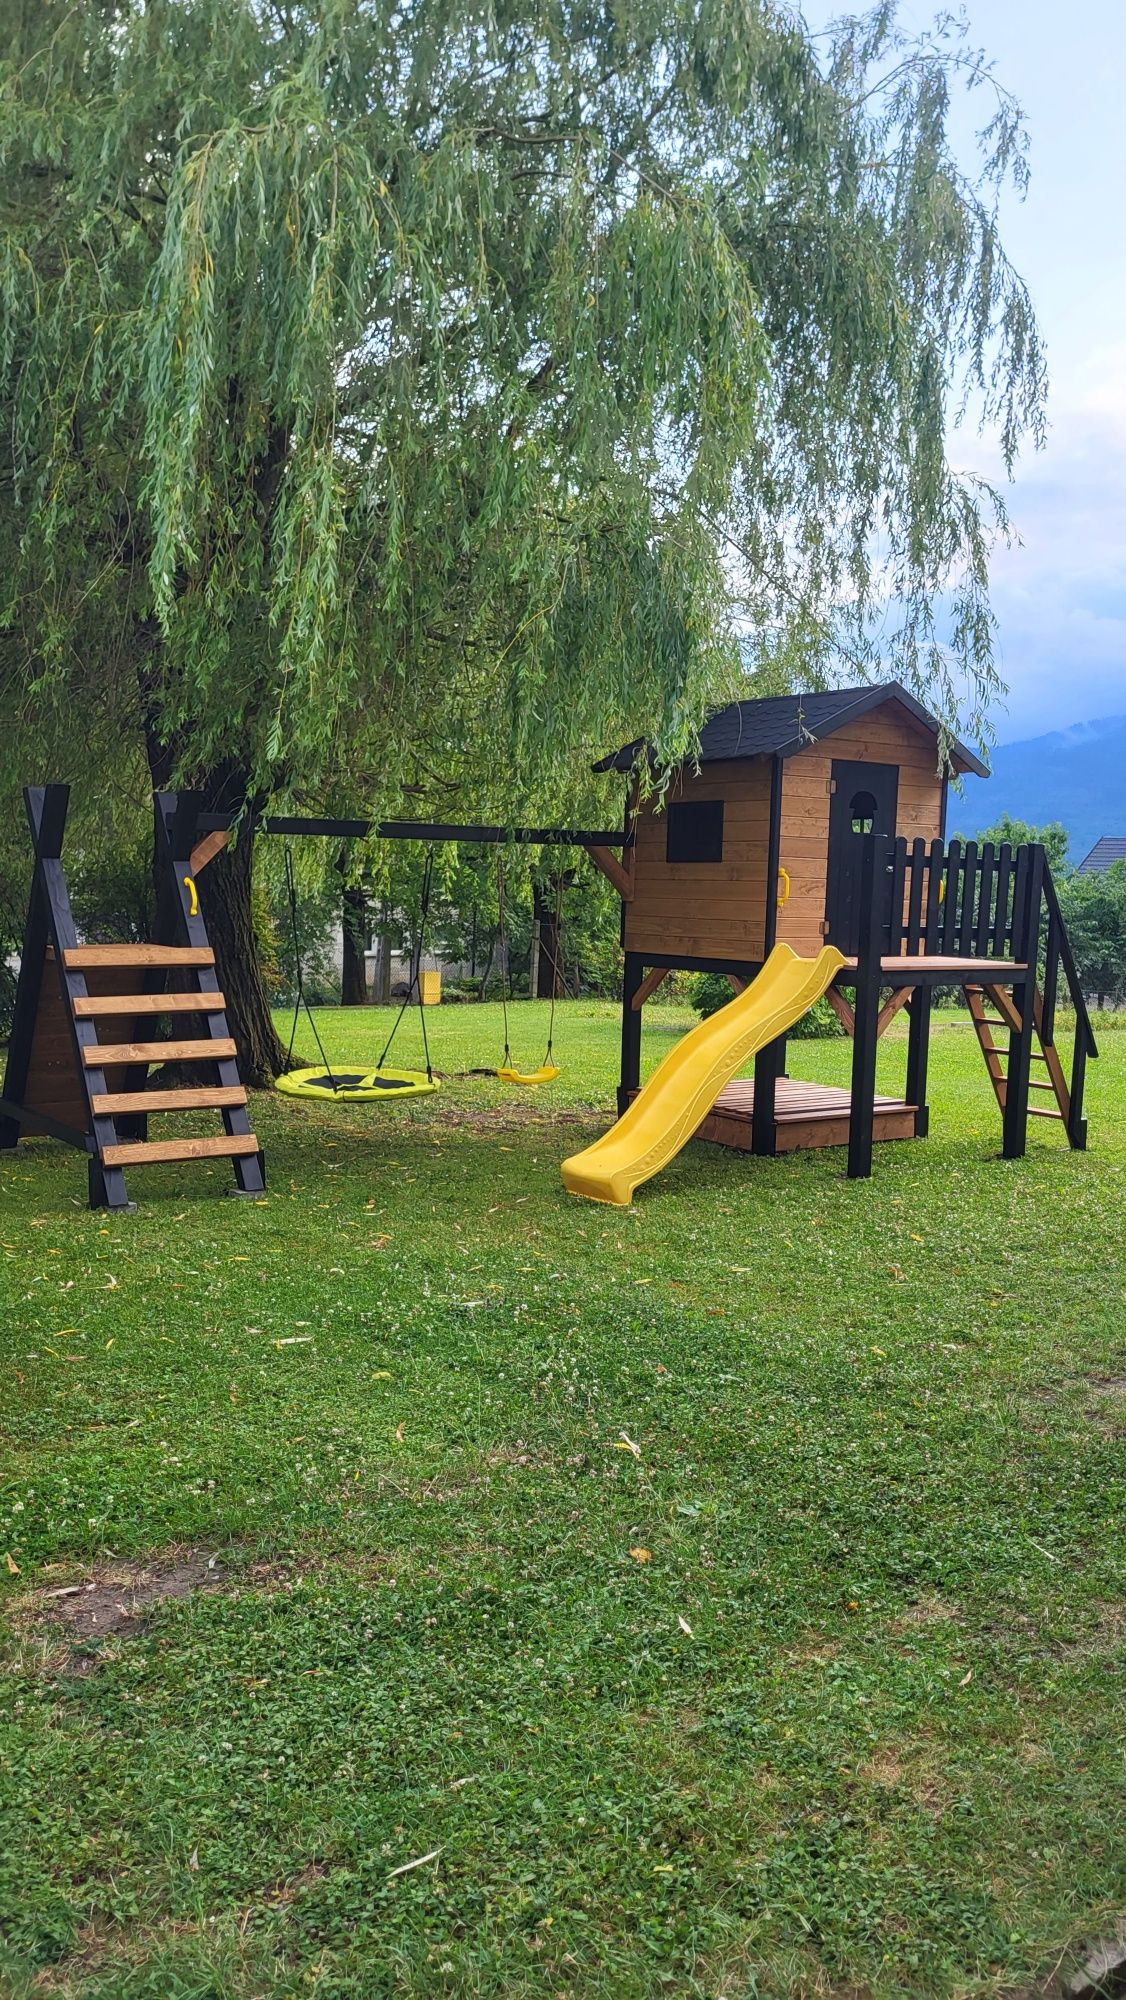 Plac zabaw  piaskownica zjeżdżalnia domek dla dzieci huśtawka Czarny